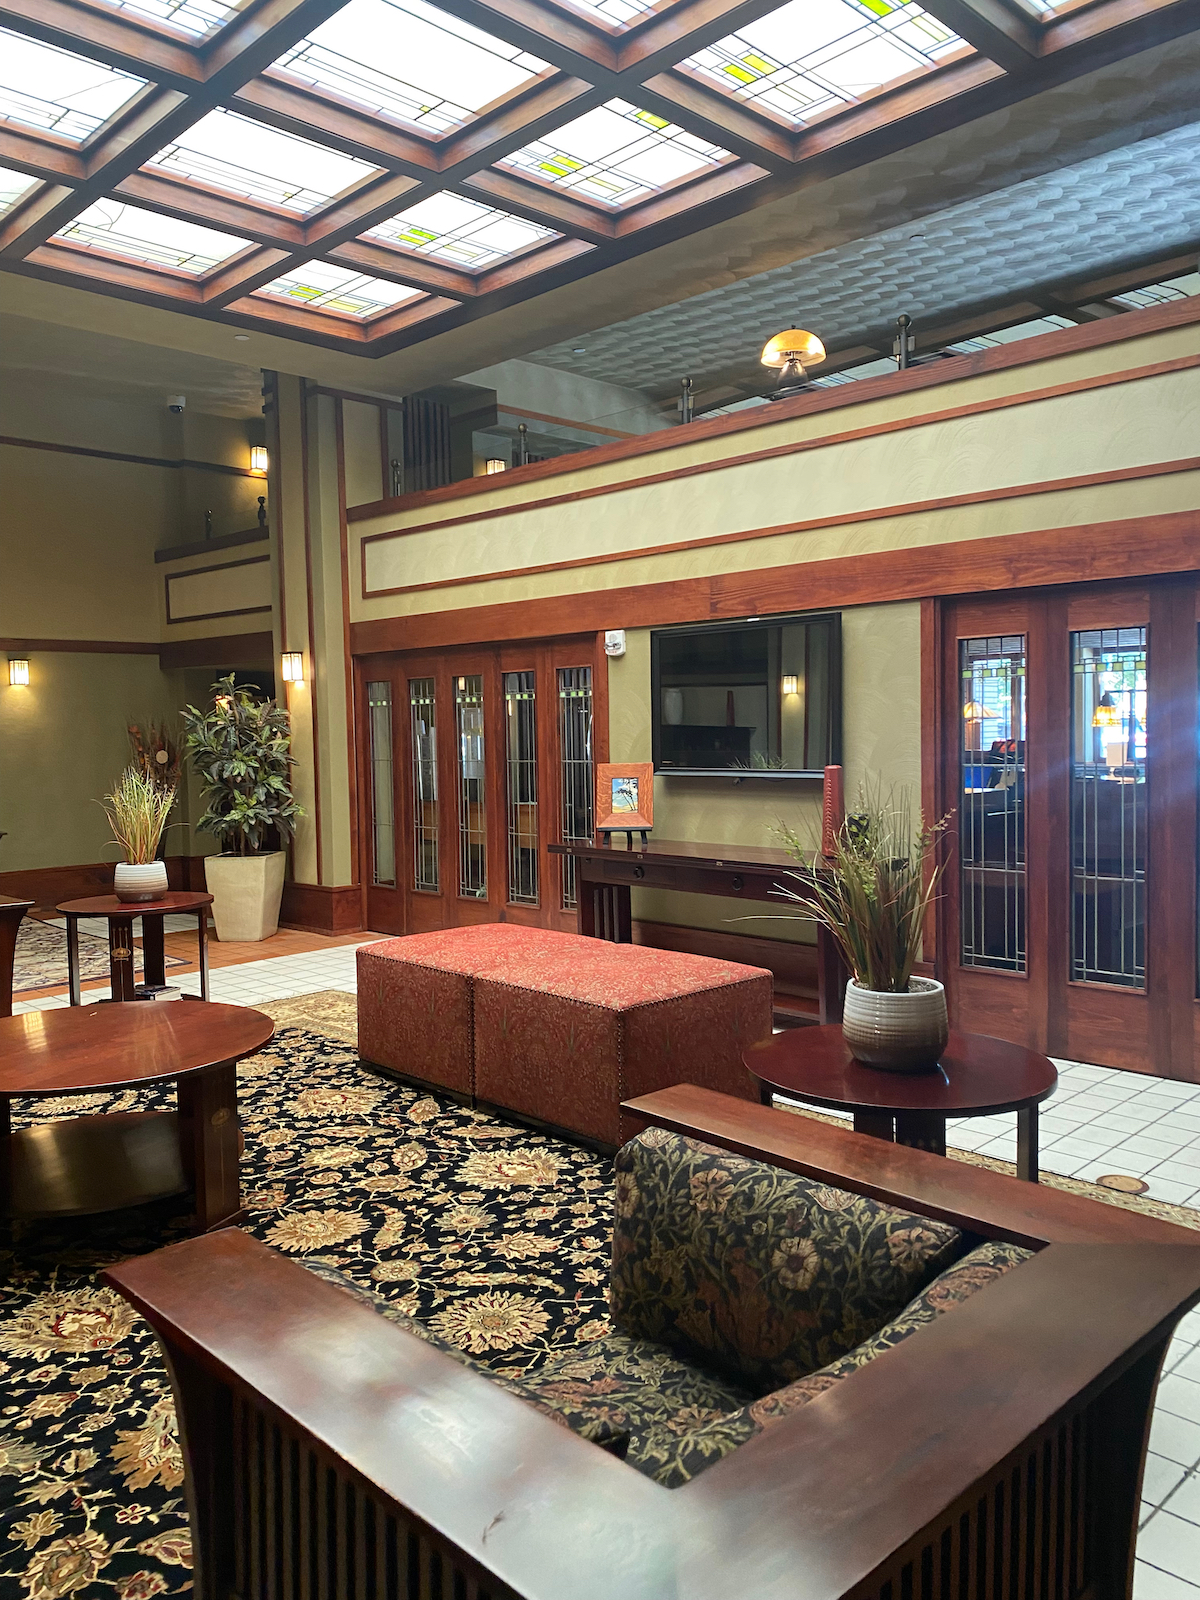 Interior lobby lounge at the Historic Park Inn Hotel in Mason City, Iowa